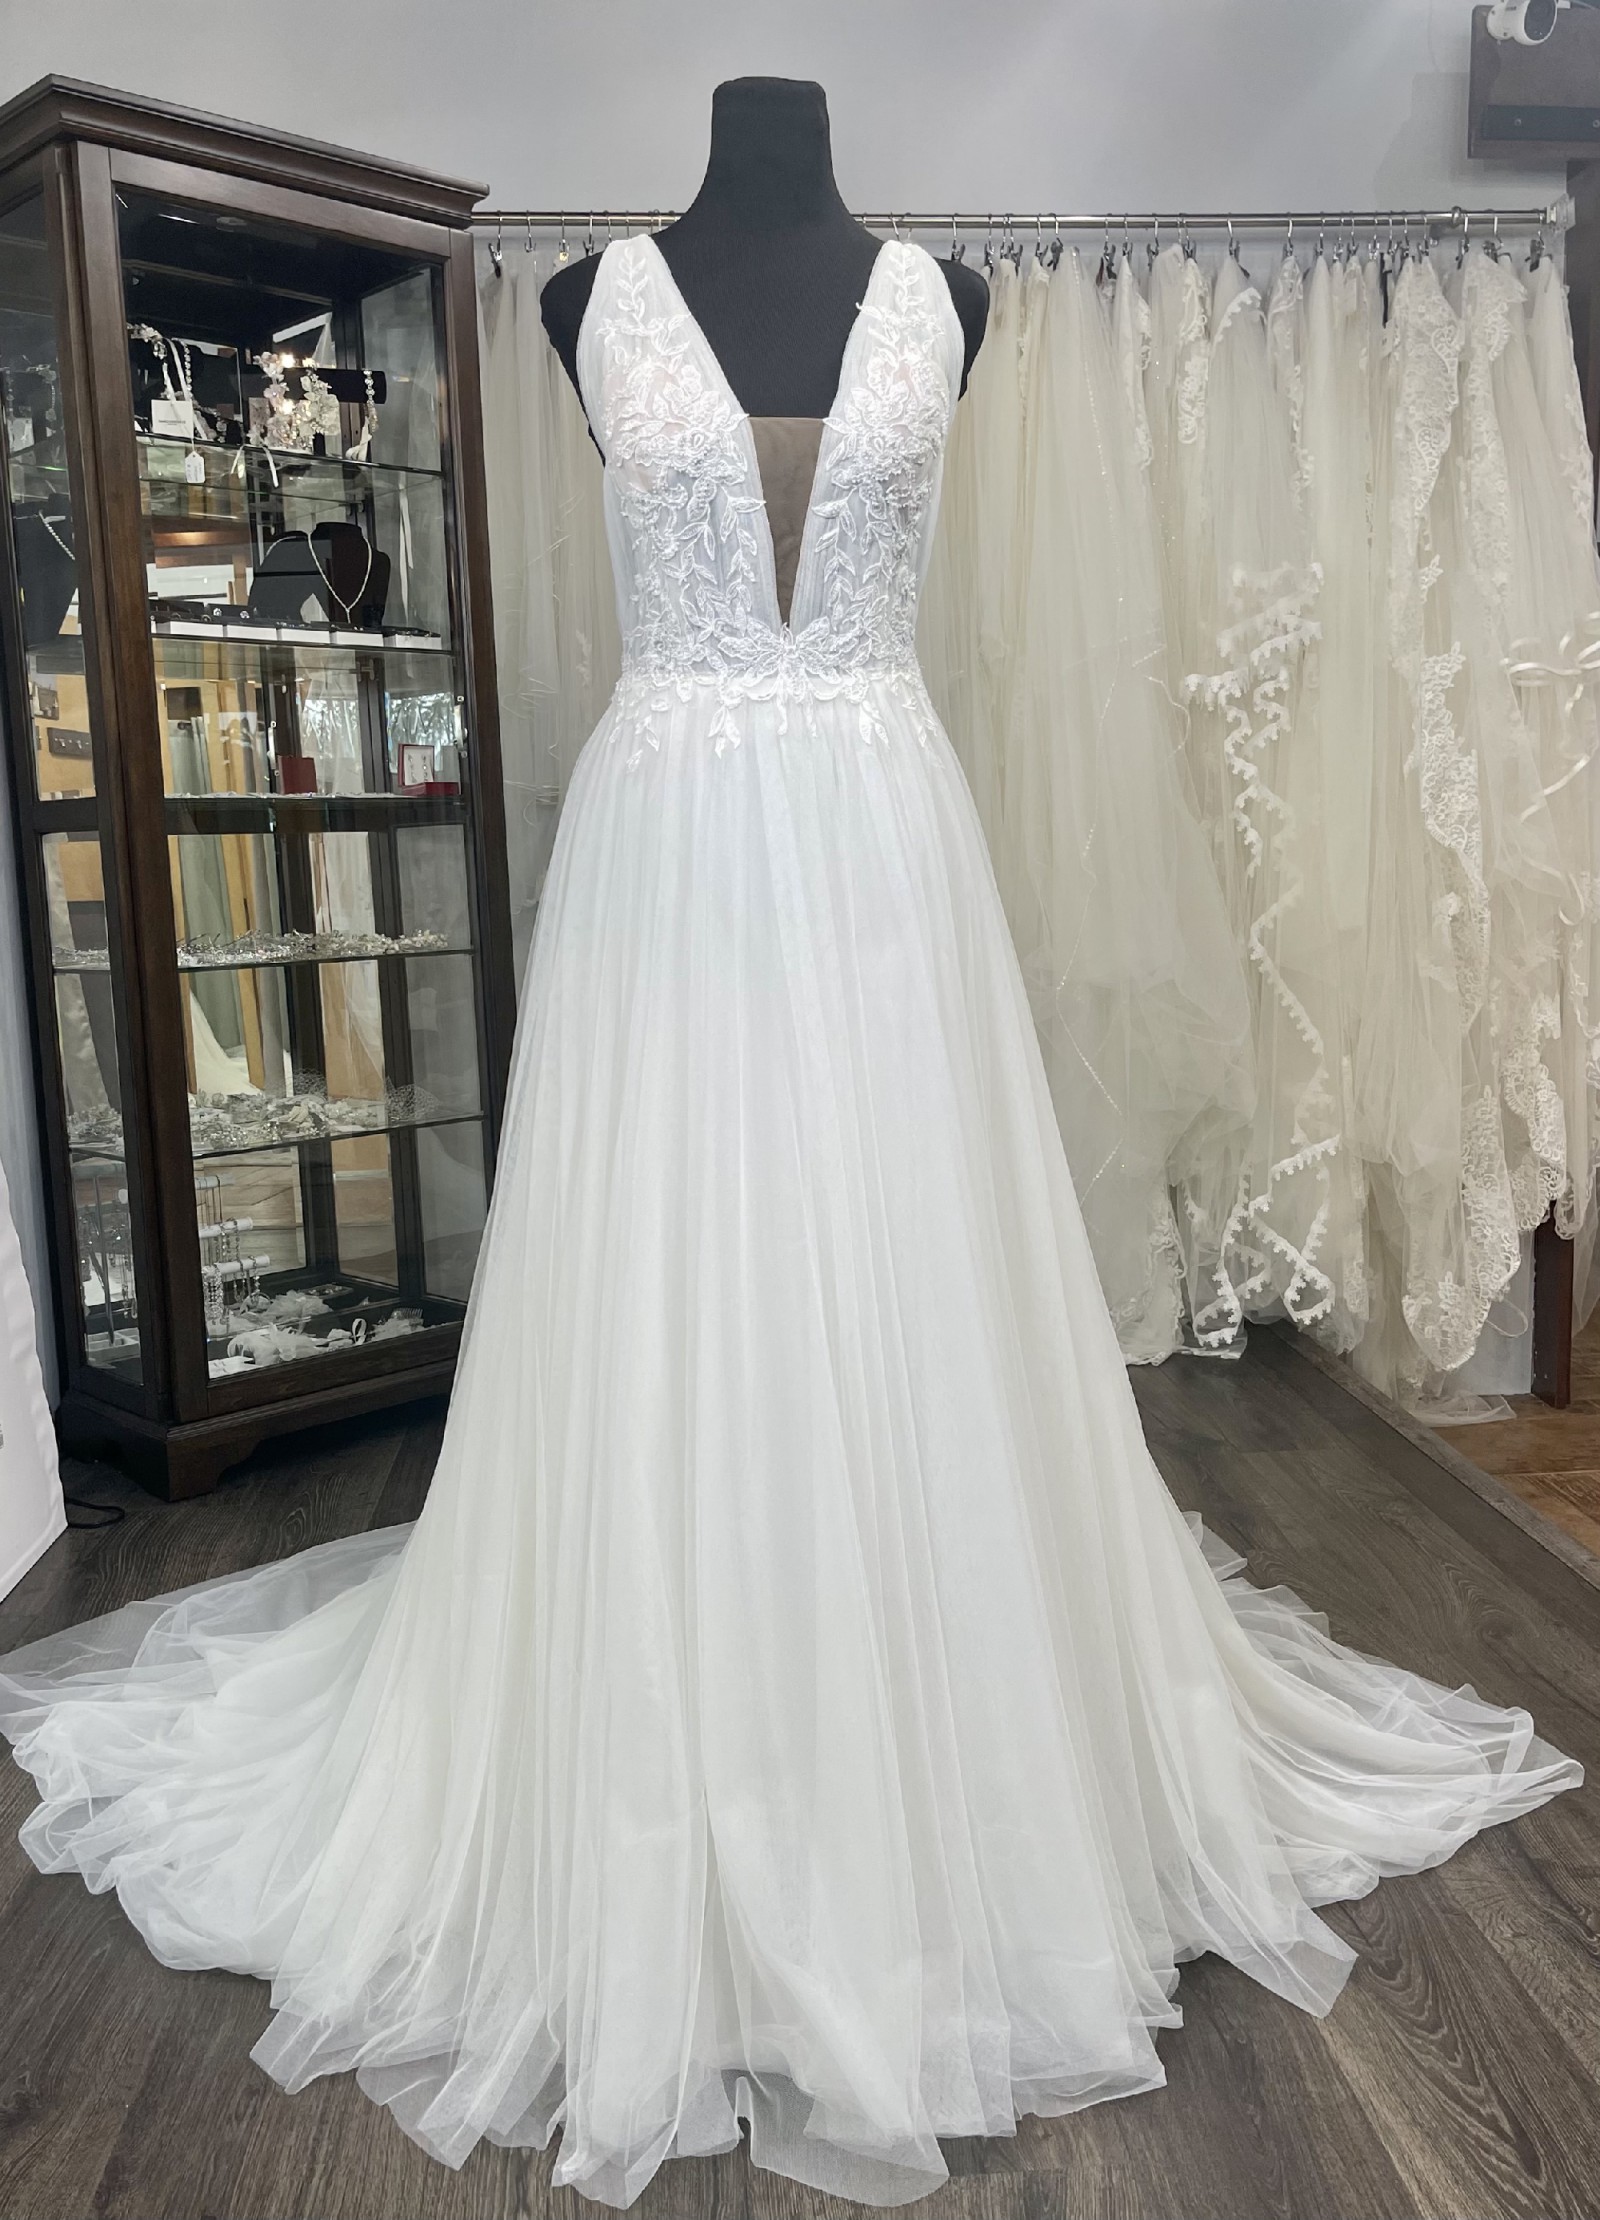 Maggie Sottero McKenna Sample Wedding Dress Save 20% - Stillwhite